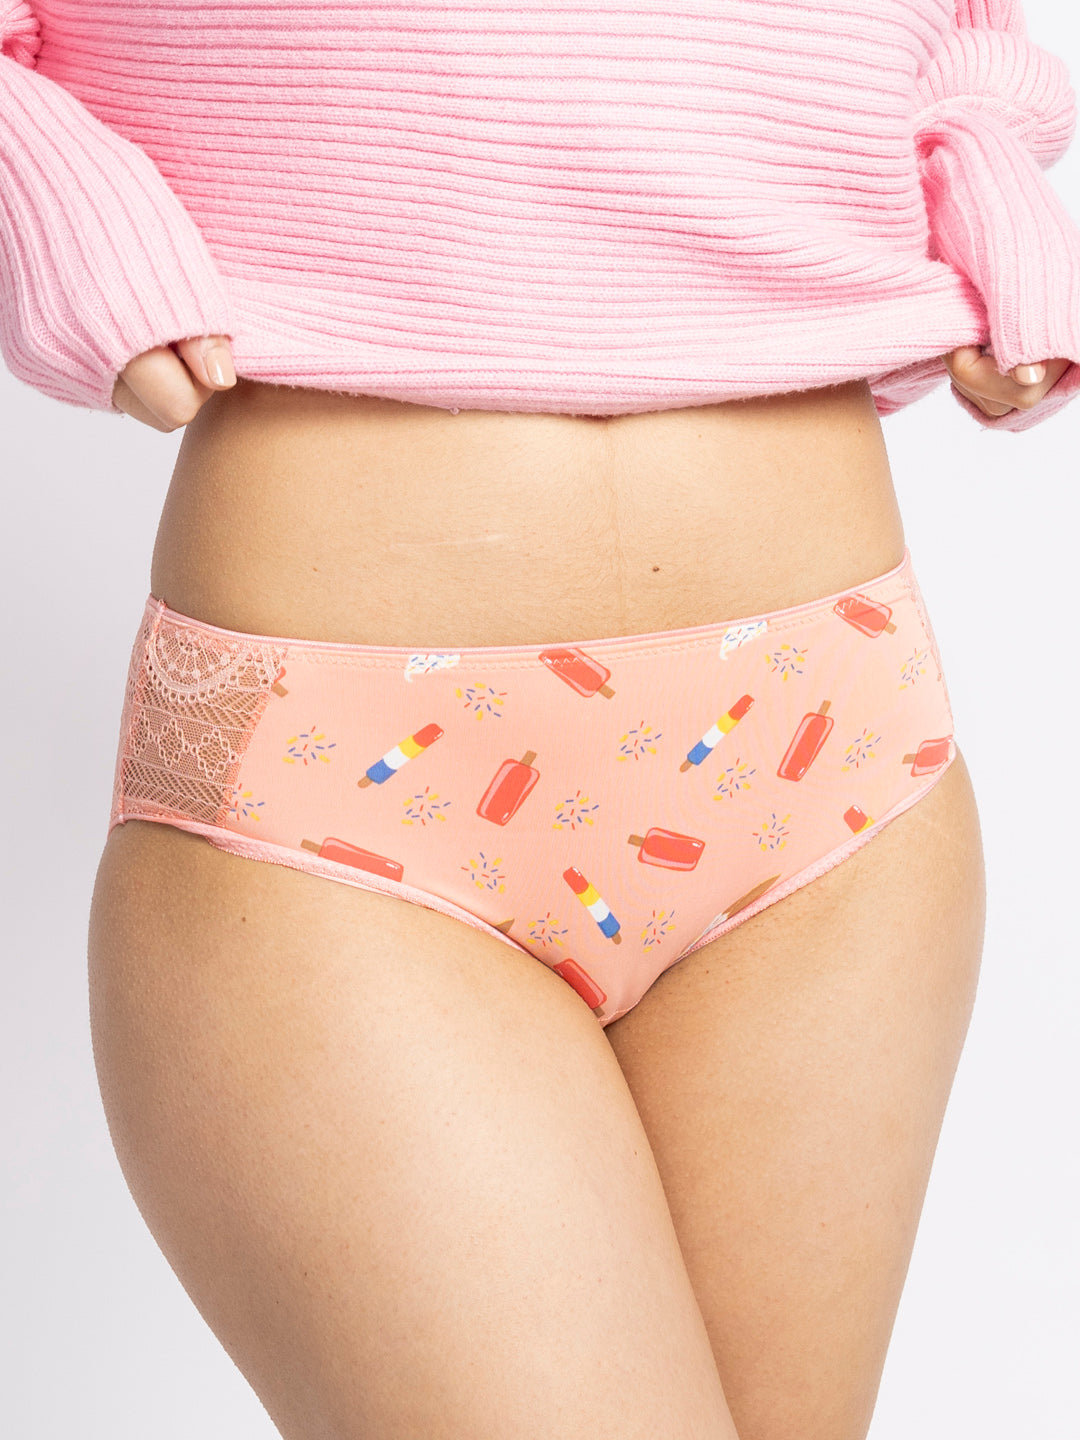 Buy Pink Panties for Women by EROTISSCH Online